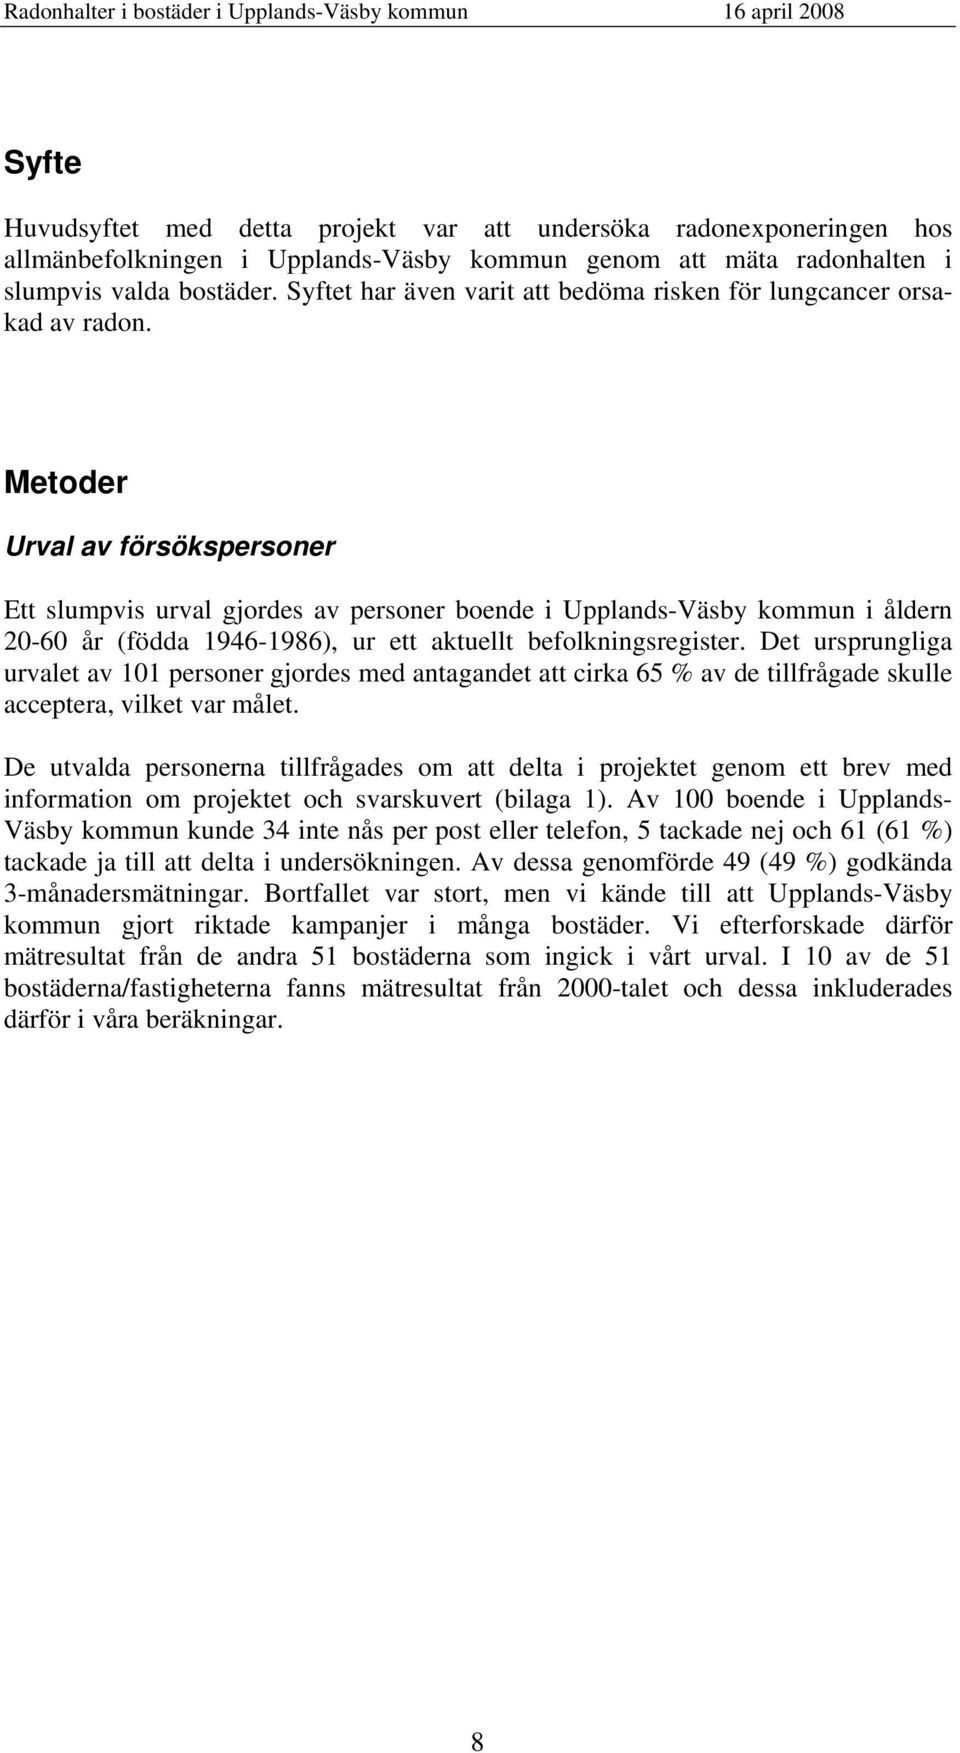 Metoder Urval av försökspersoner Ett slumpvis urval gjordes av personer boende i Upplands-Väsby kommun i åldern 20-60 år (födda 1946-1986), ur ett aktuellt befolkningsregister.